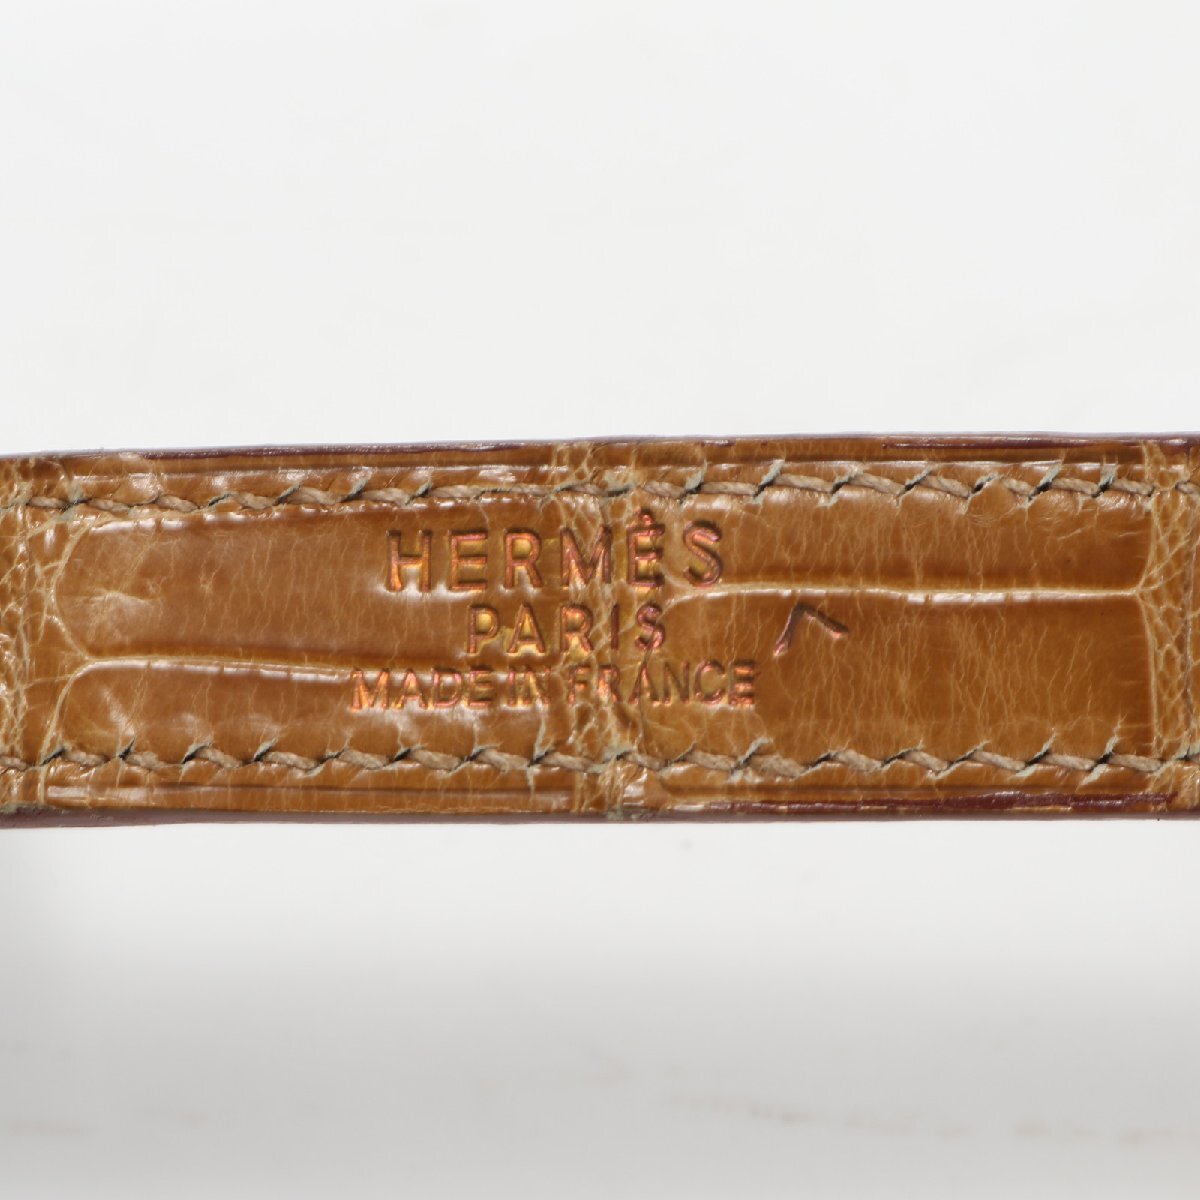 1 иен превосходный товар Hermes *C печать Polo подвеска крокодил кожа плечо ремешок Gold металлические принадлежности сумка мужской женский ENT 1106-N1